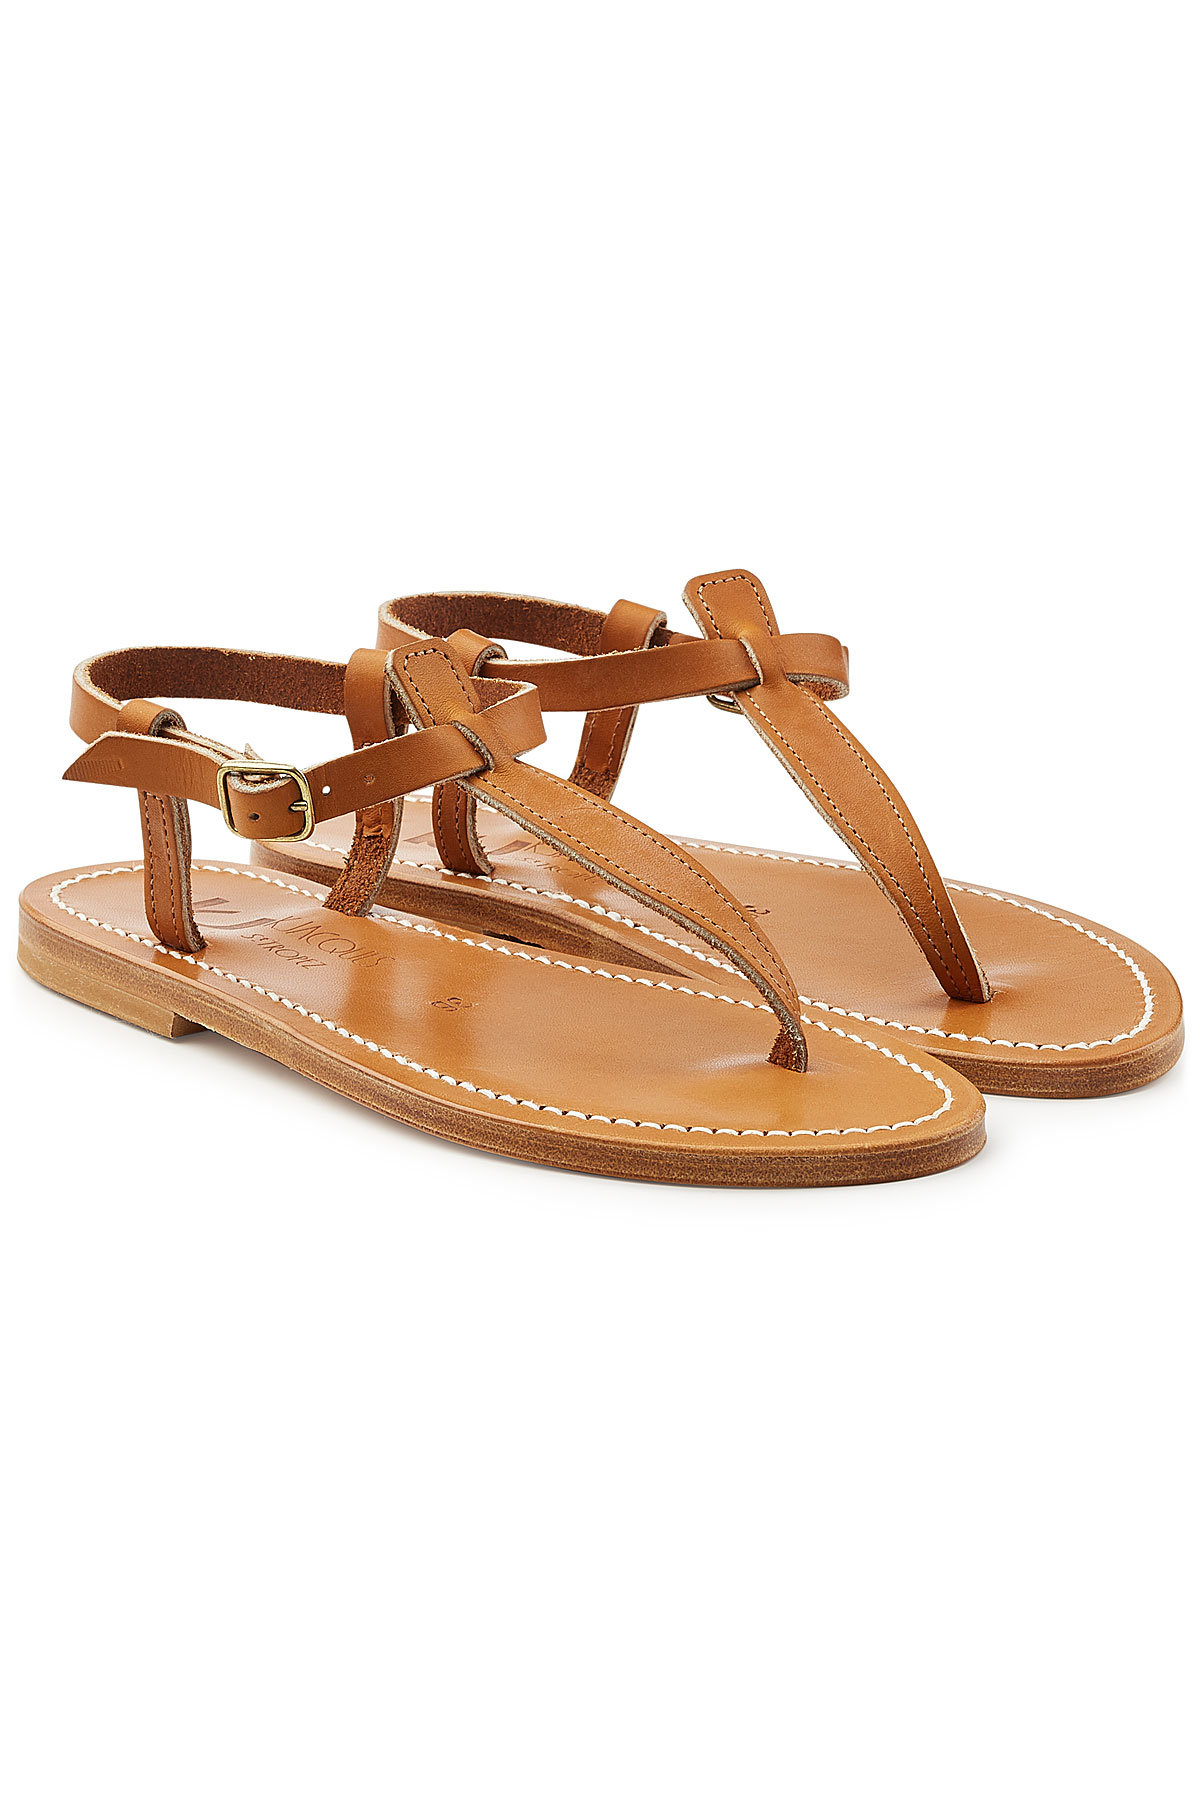 K.Jacques - Picon Leather Sandals